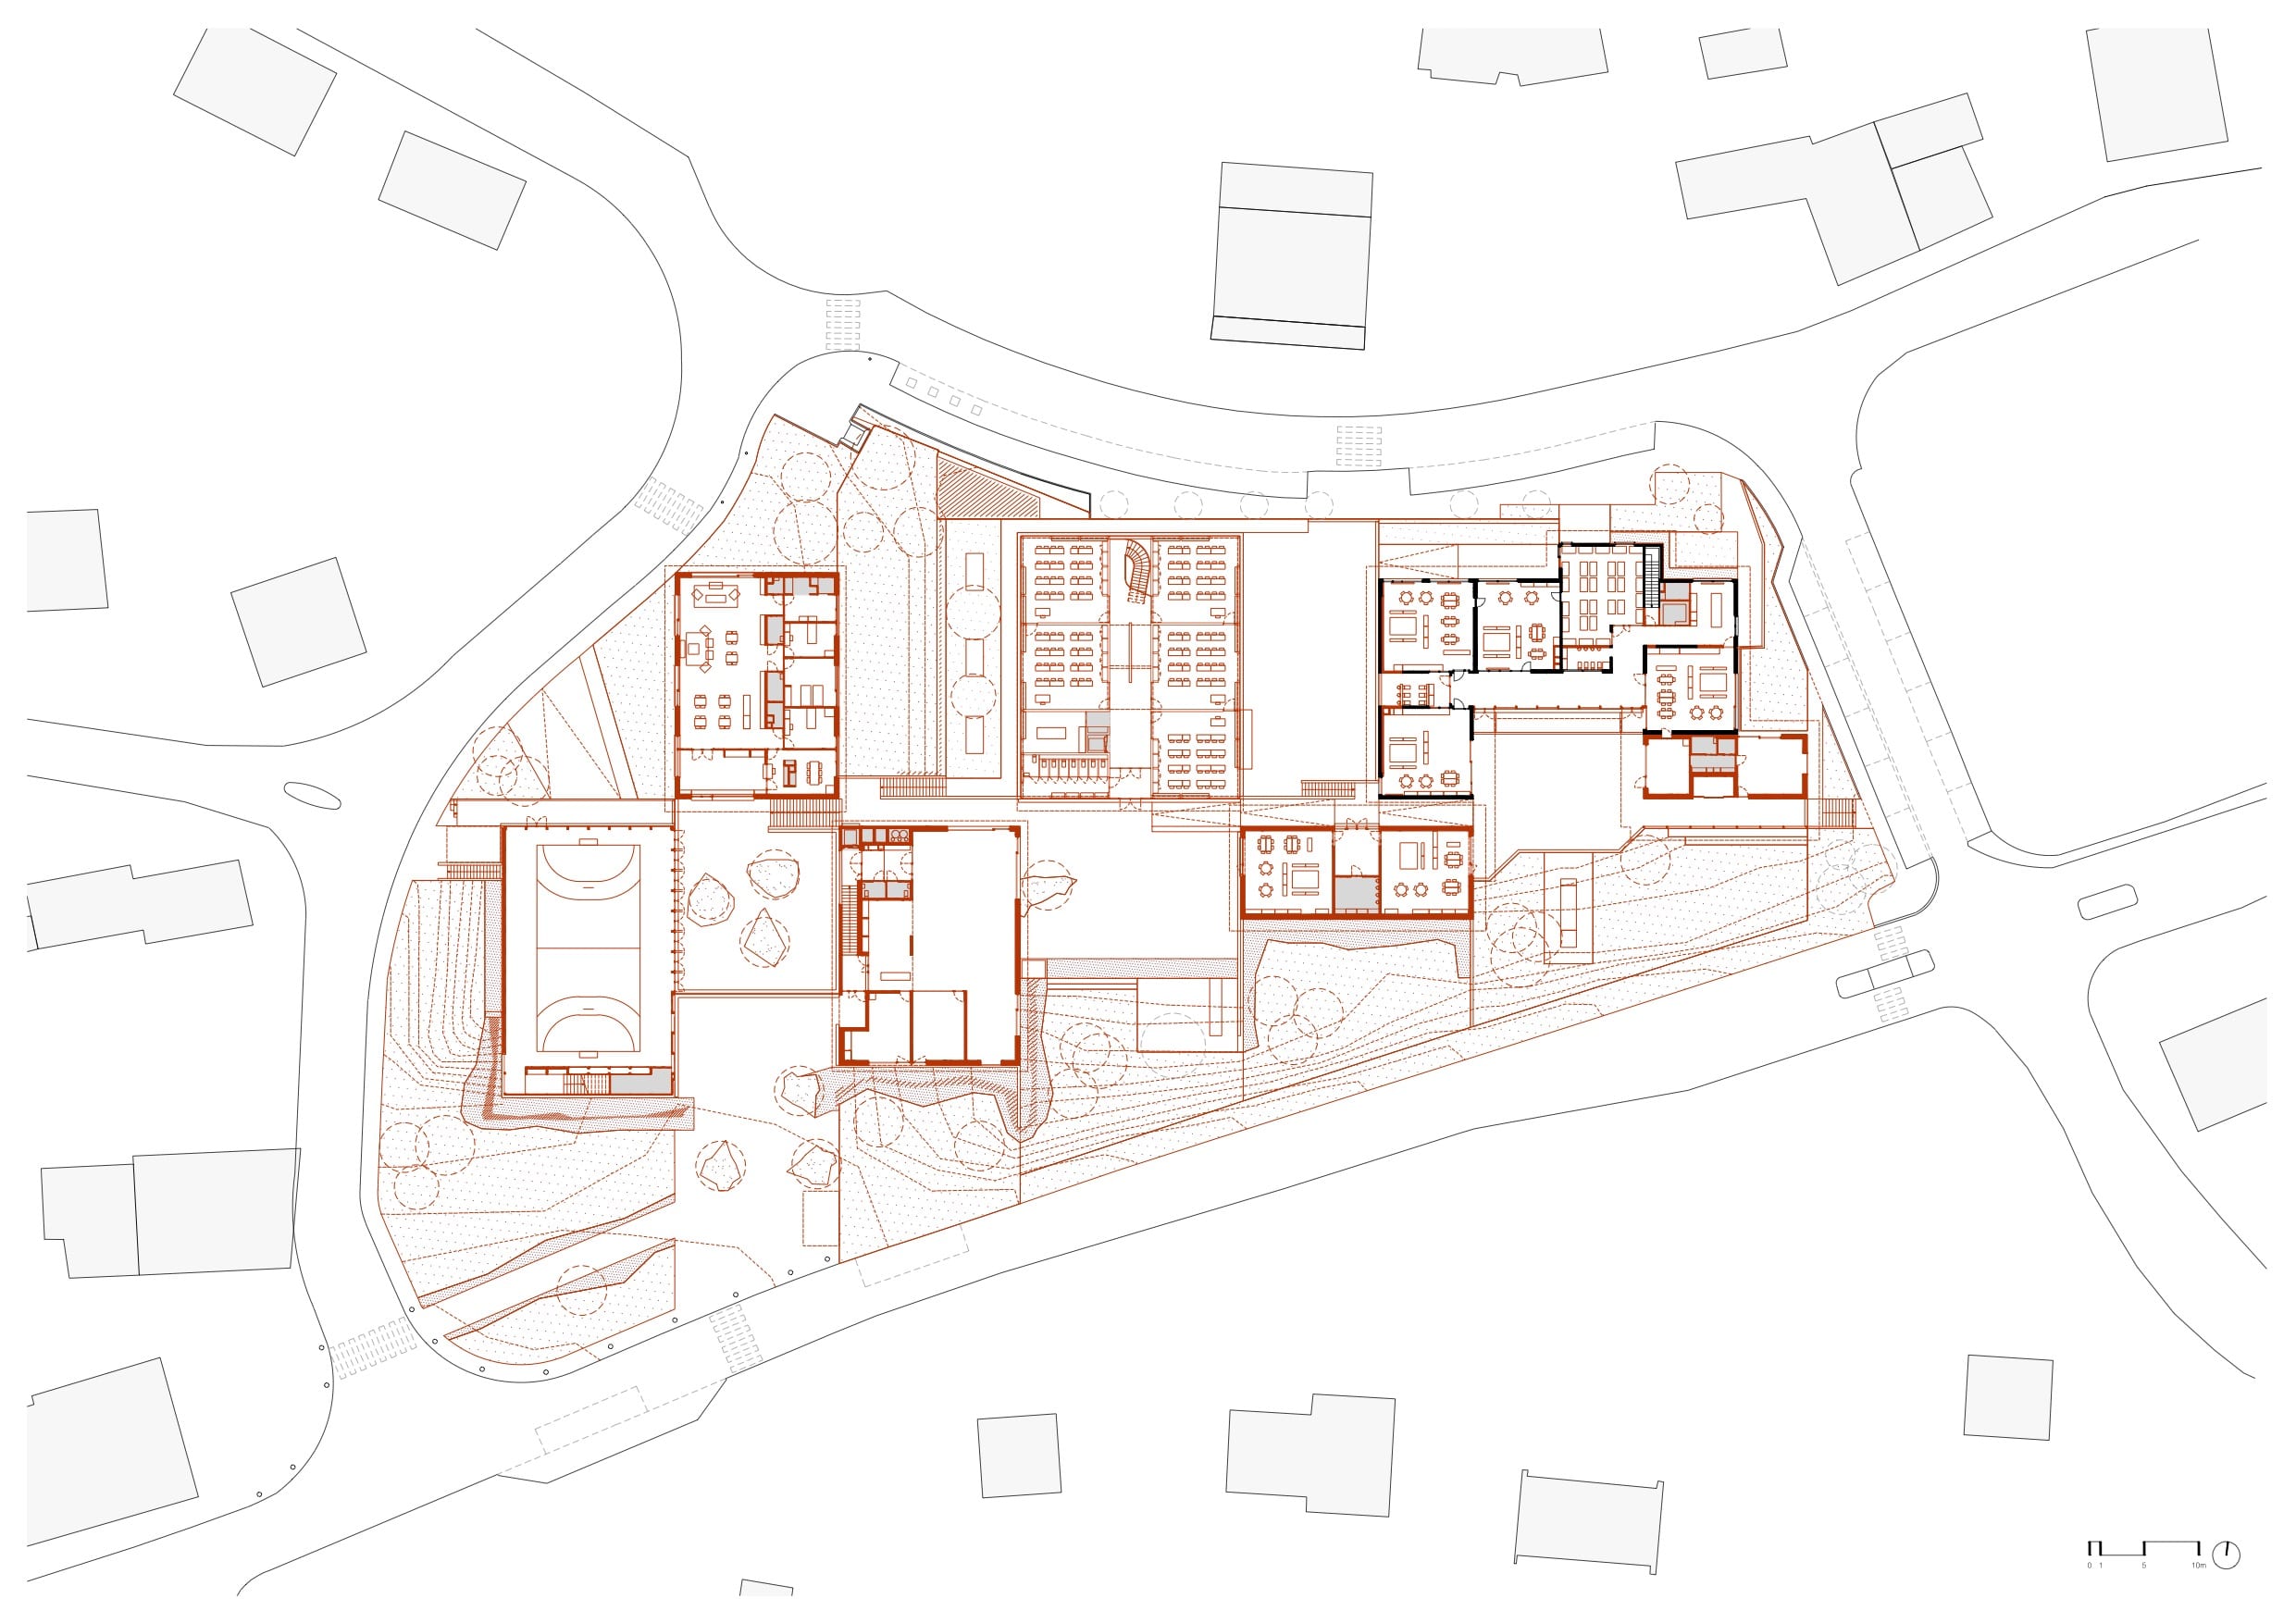 Plan eines unregelmäßig geschnittenen, viereckigen Grundstücks mit mehreren Gebäuden, Linien der Gebäude in Rot. Zeichnung: PNG, Julien Boidto, Emilien Robin